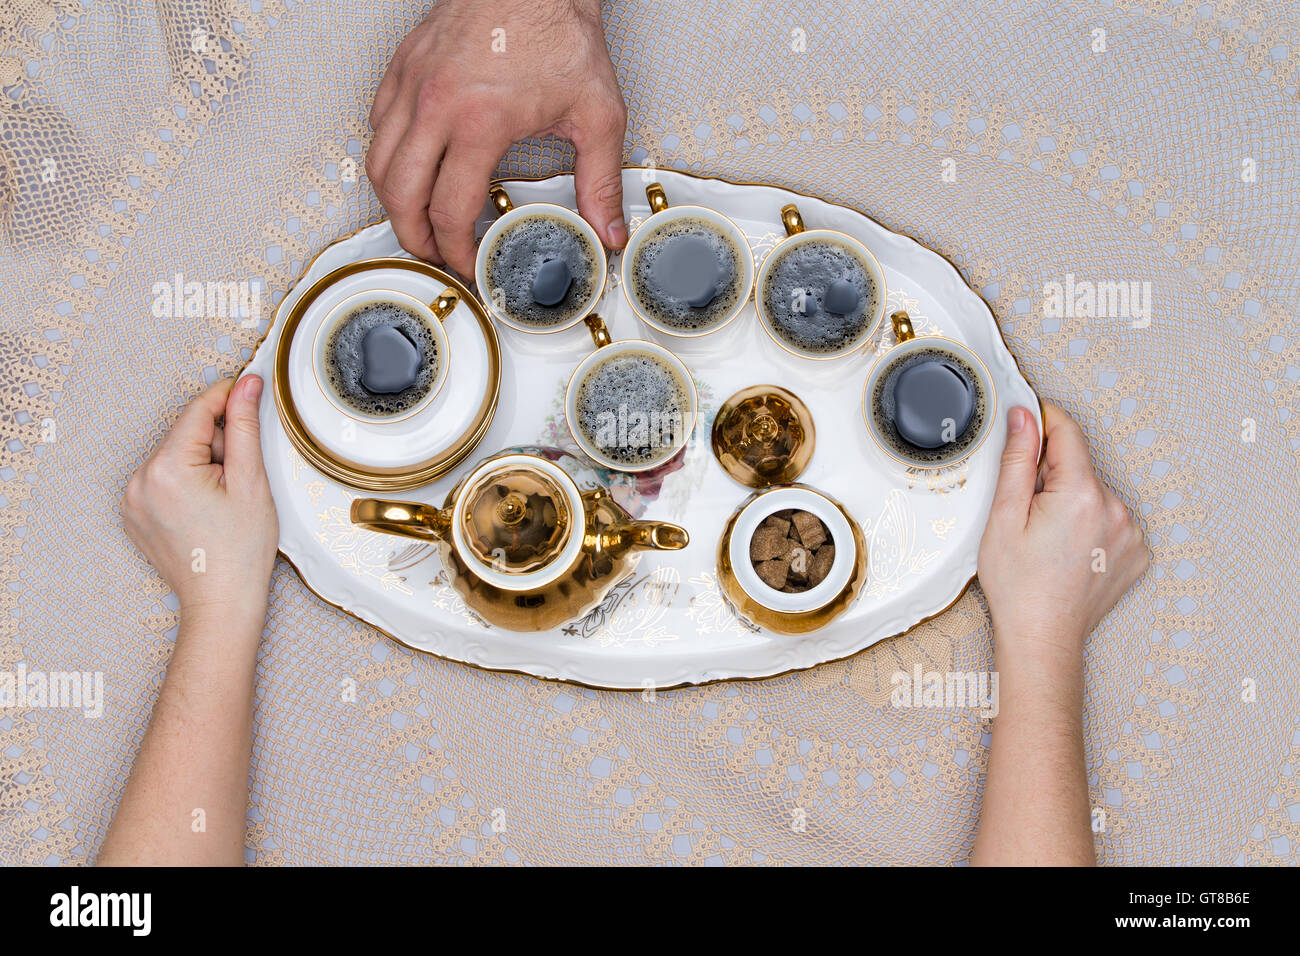 Six petites tasses de café turc sur un plateau, tenir à la main au-dessus d'un tableau blanc en High Angle View. Banque D'Images